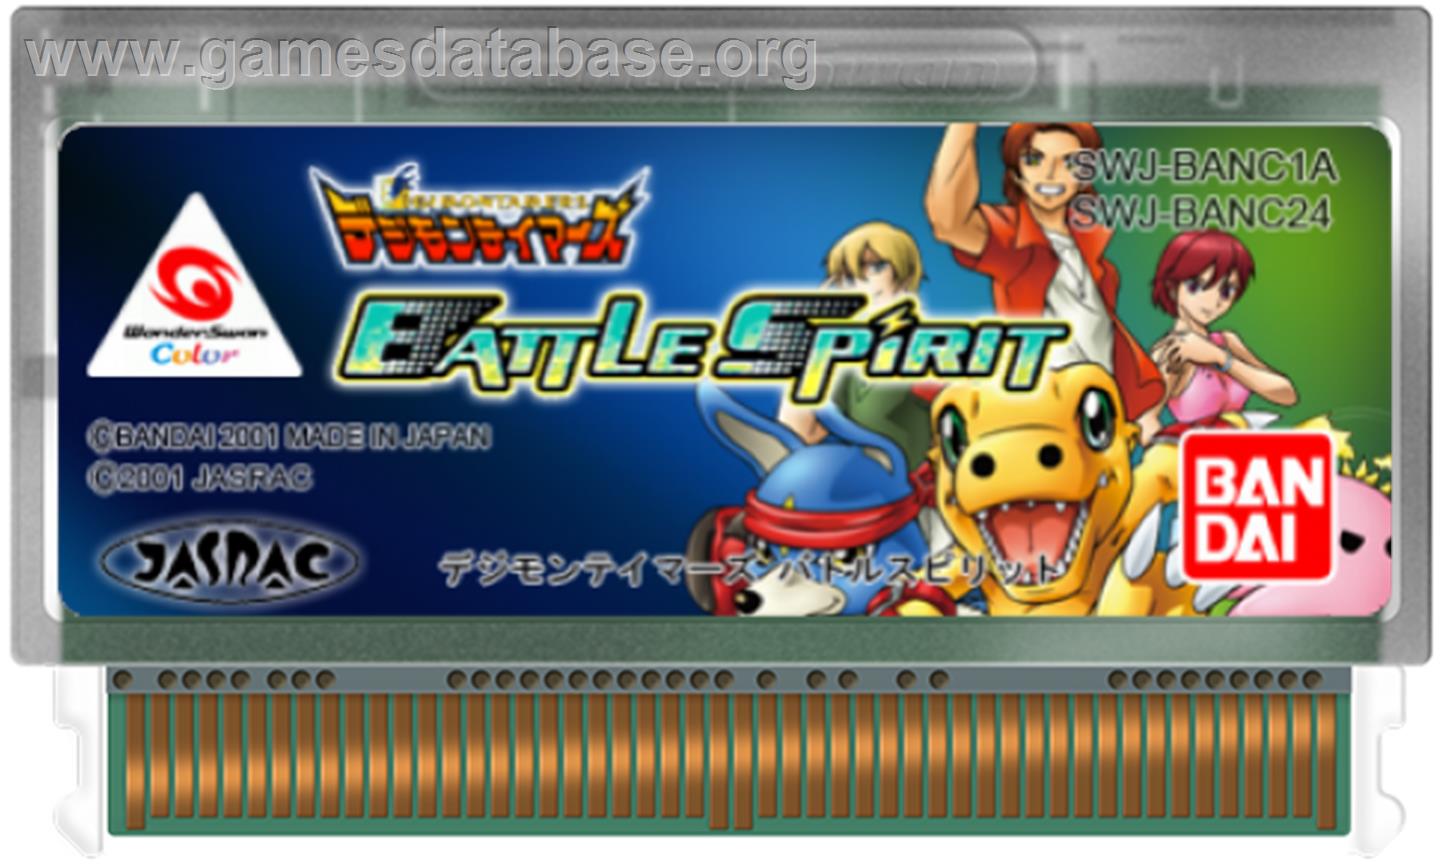 Digimon Tamers: Battle Spirit Ver. 1.5 - Bandai WonderSwan Color - Artwork - Cartridge